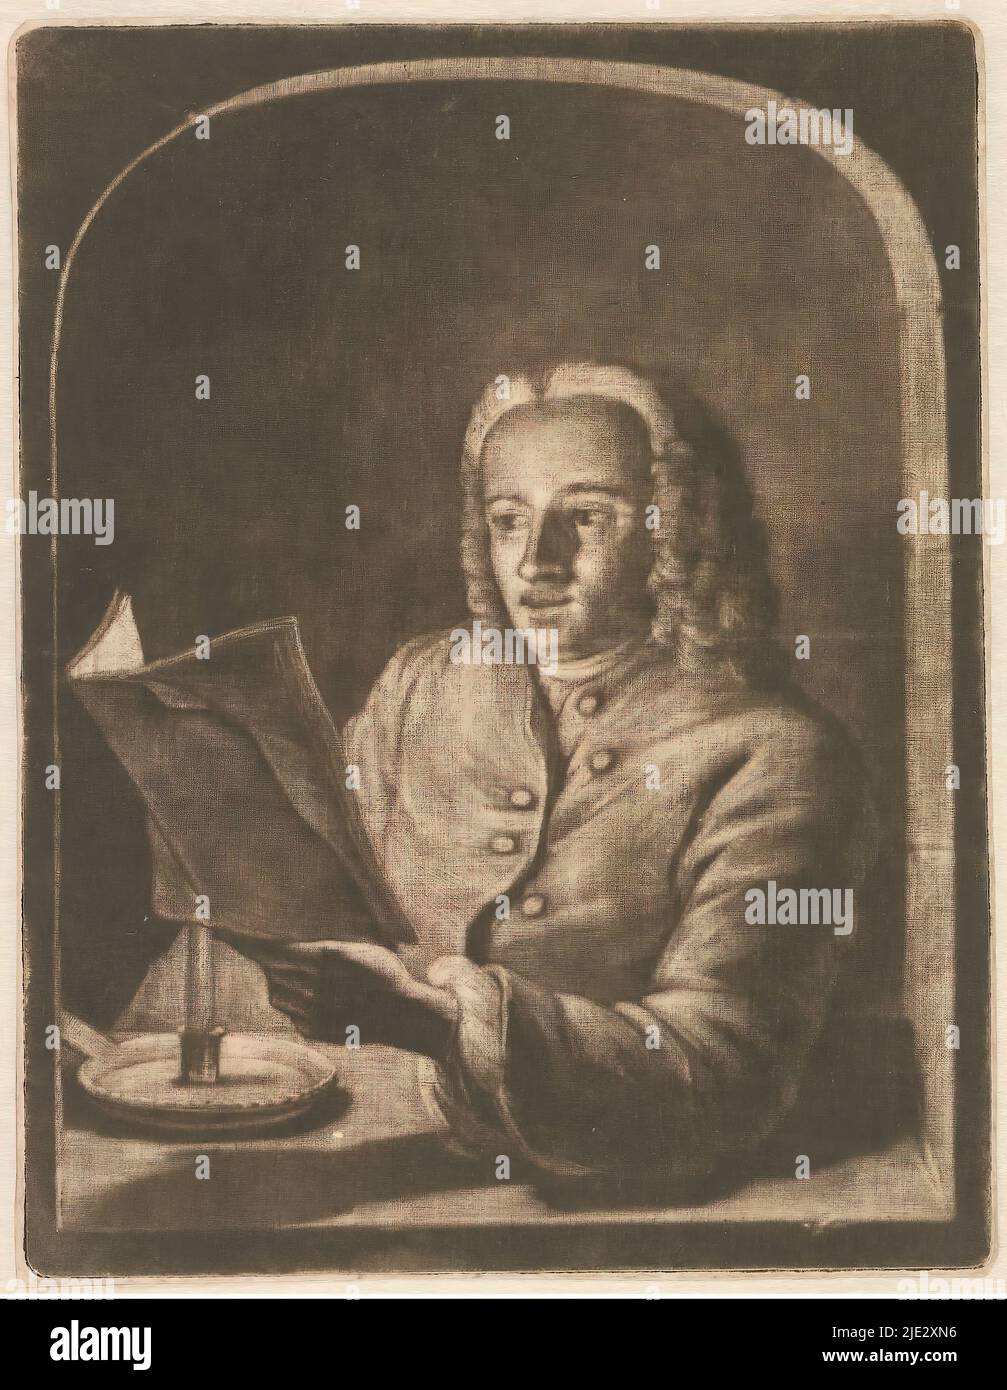 Man by Candlelight, éventuellement Jan Snellen, Un homme, peut-être Jan Snellen, regarde un paquet de feuilles par Candlelight., imprimeur: Aert Schouman, 1720 - 1792, papier, hauteur 162 mm × largeur 126 mm Banque D'Images